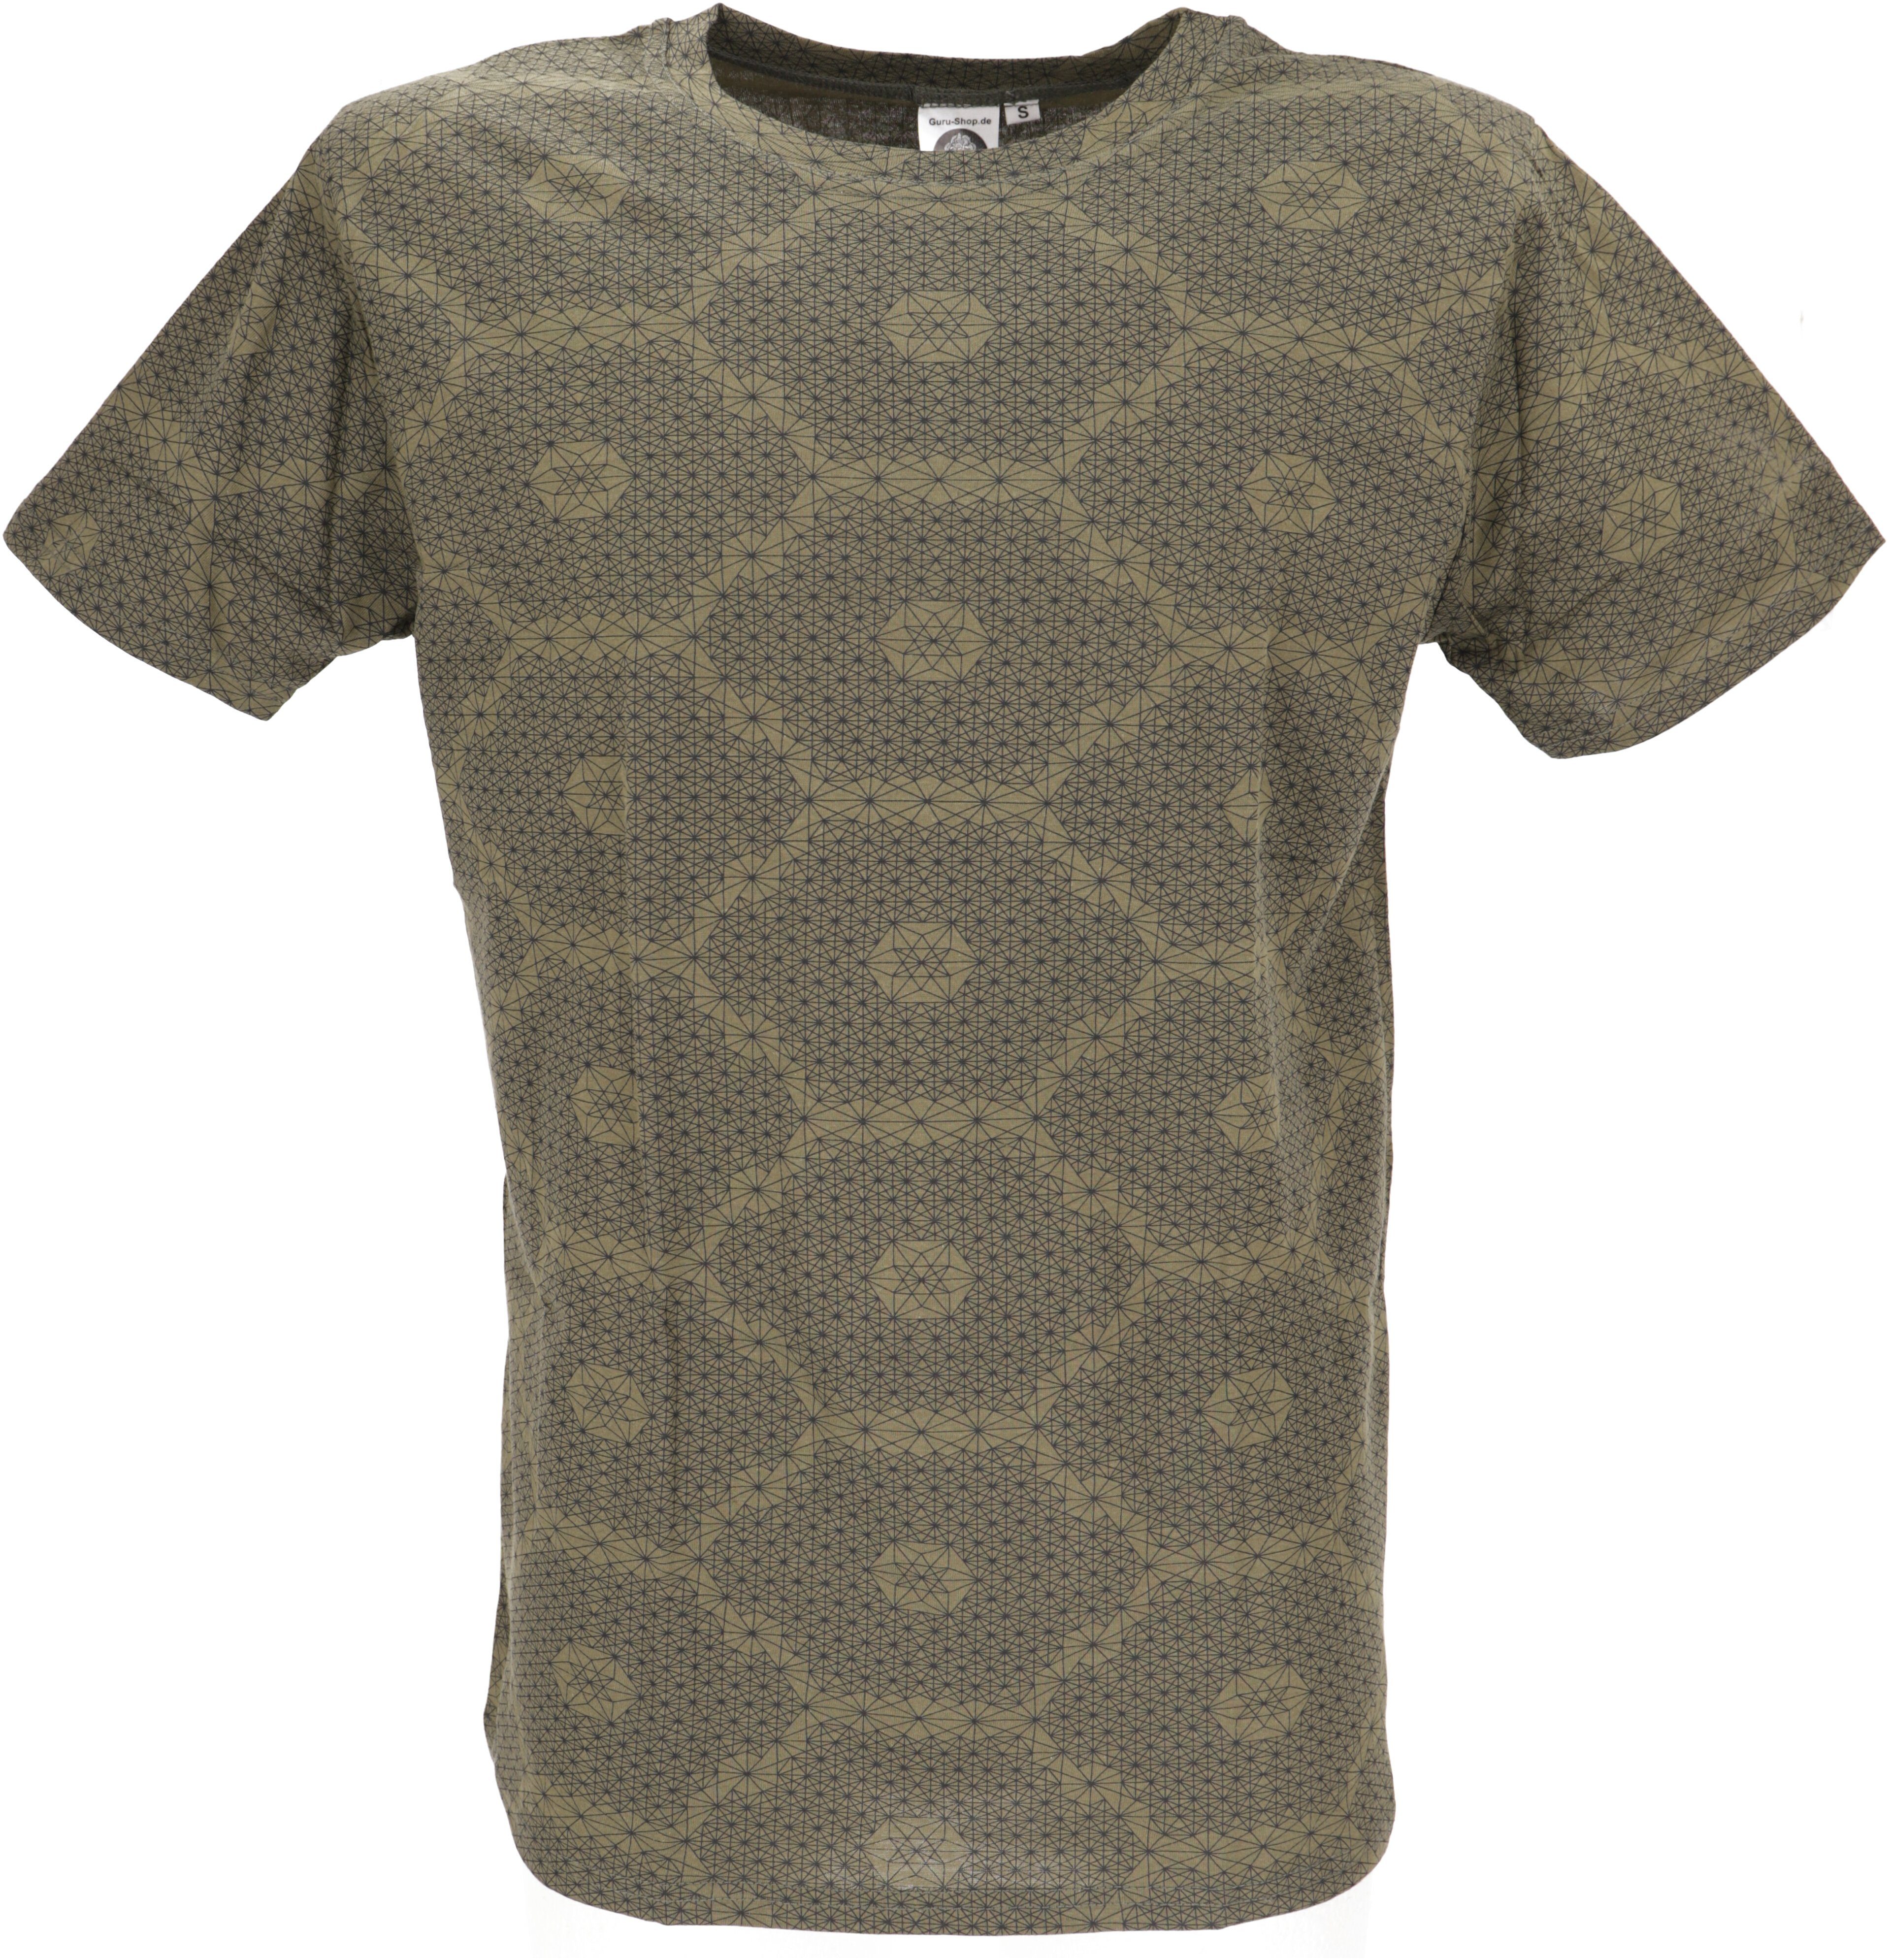 Guru-Shop T-Shirt T-Shirt mit psychodelischem Druck, Goa T-Shirt.. alternative Bekleidung olivgrün